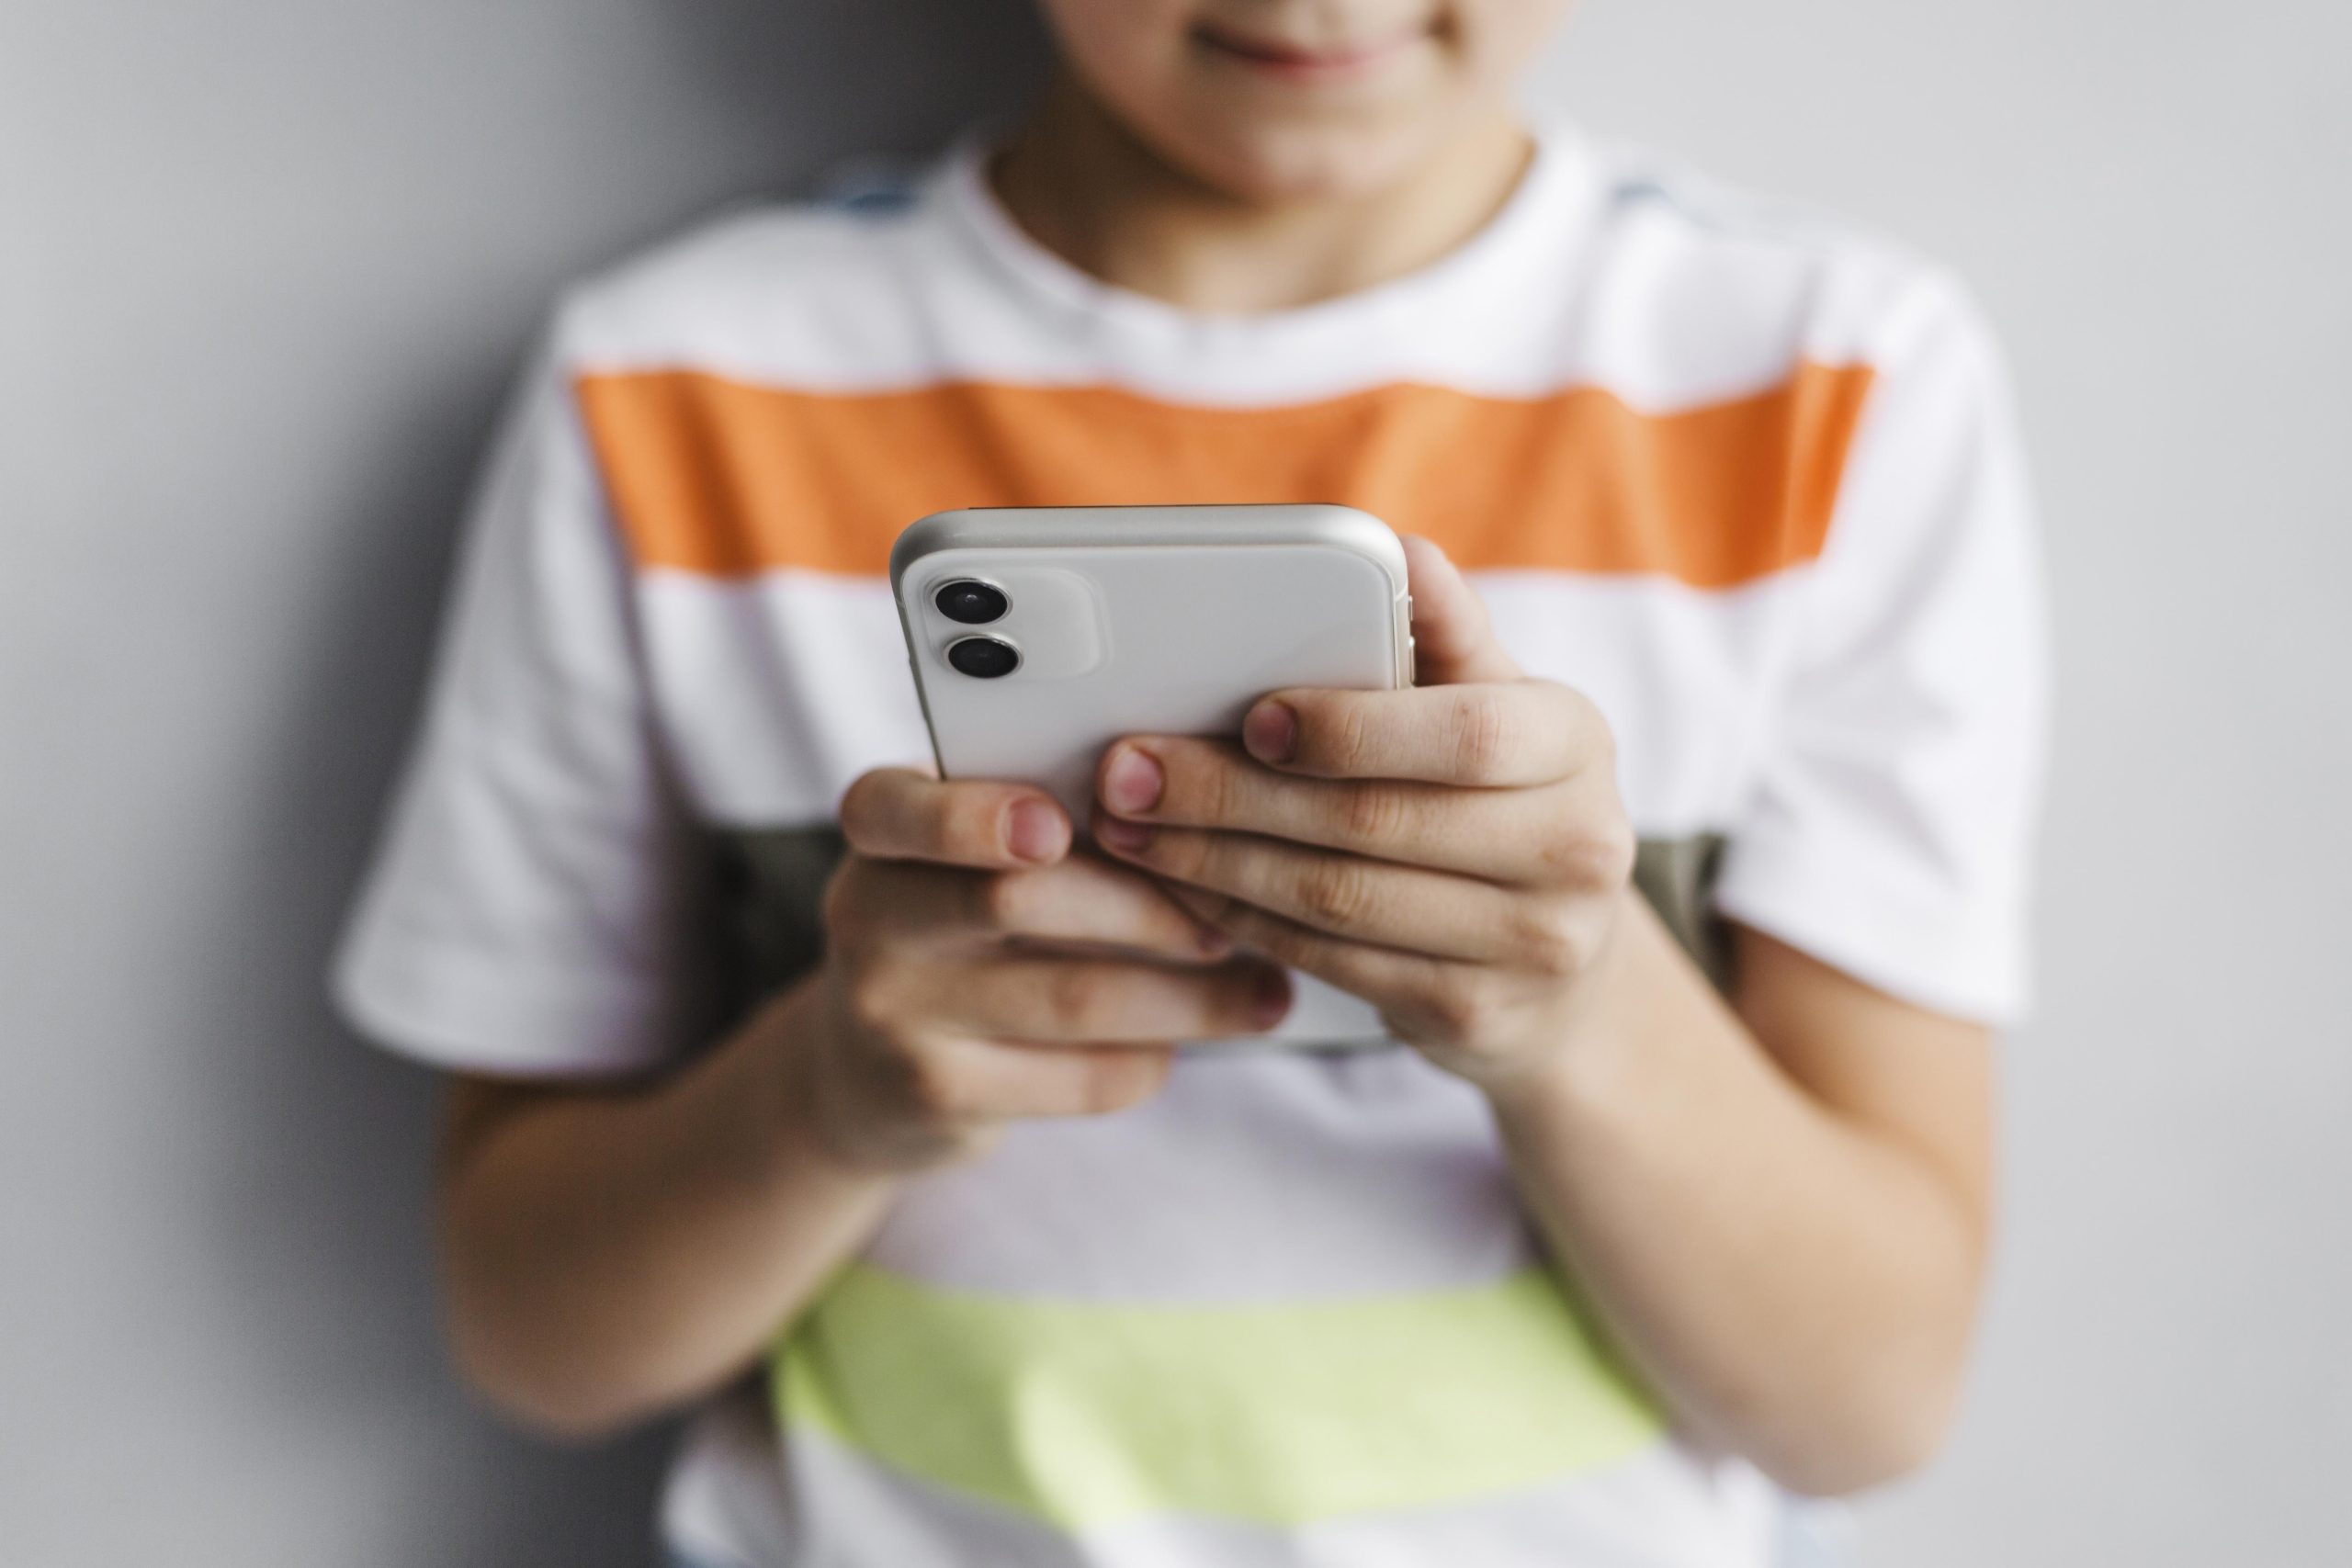 Niños chilenos reciben a los 8 años su primer teléfono móvil.